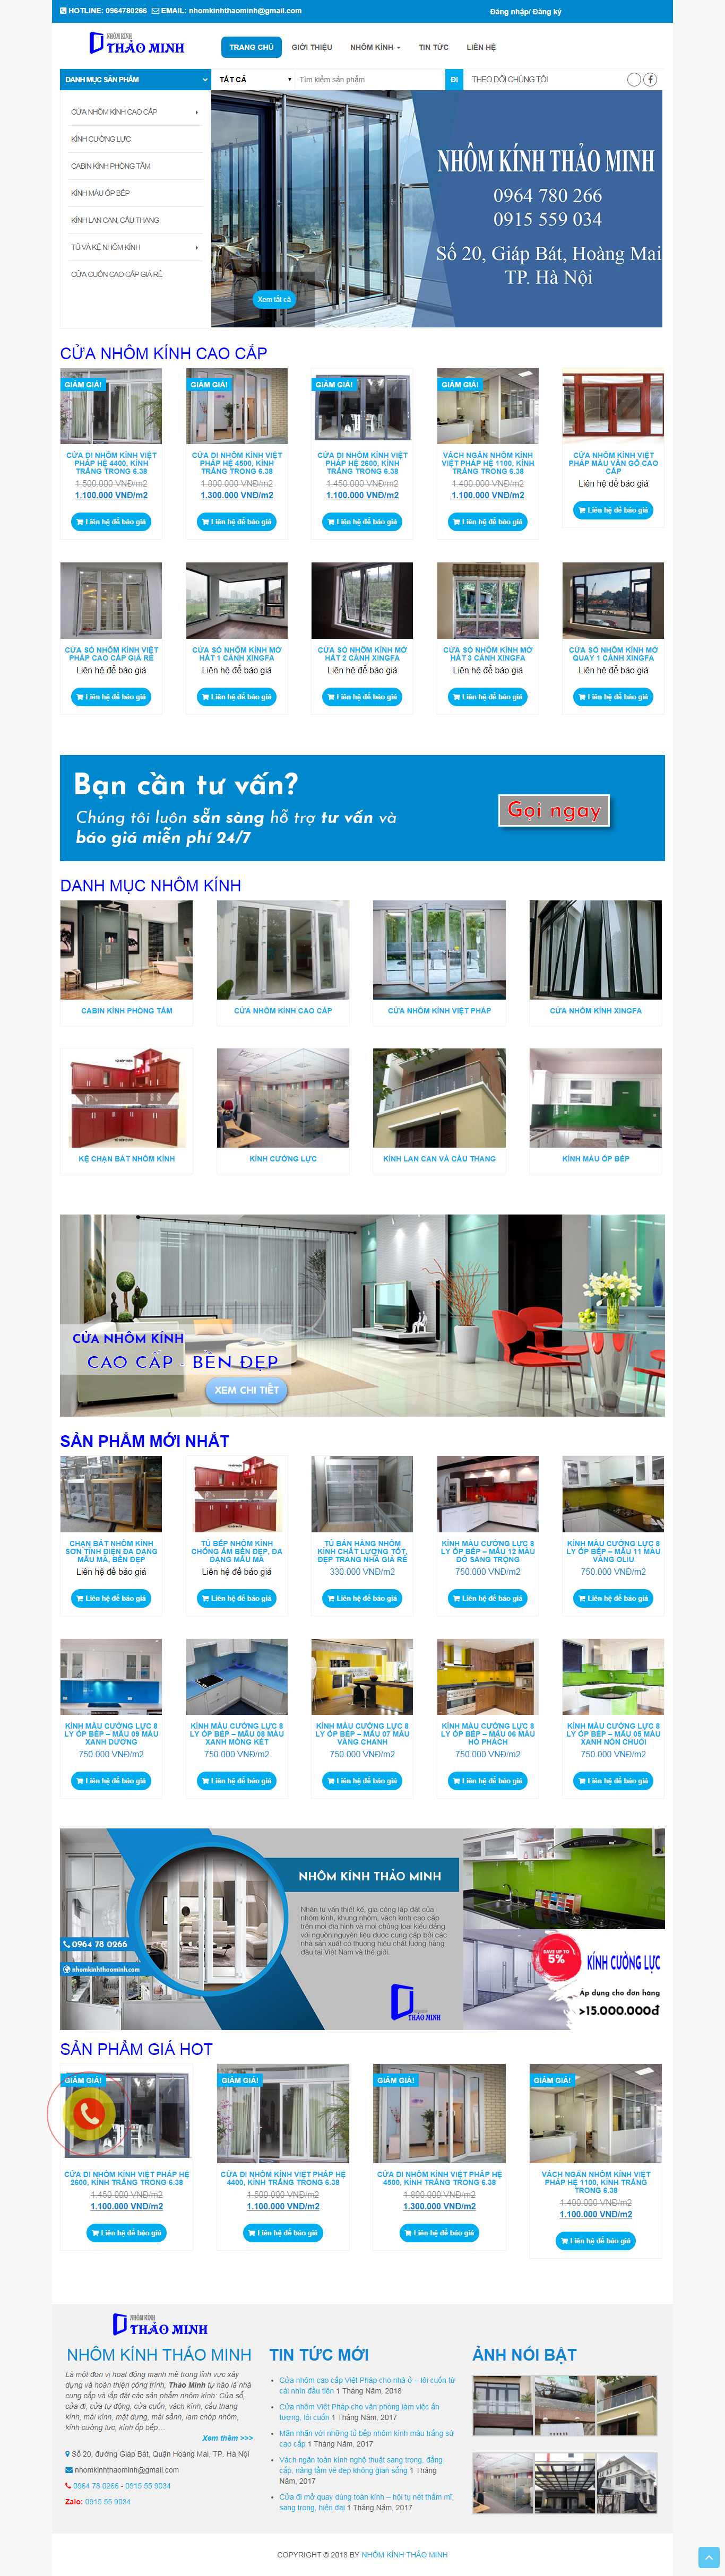 Thiết kế Website nhôm kính - nhomkinhthaominh.com